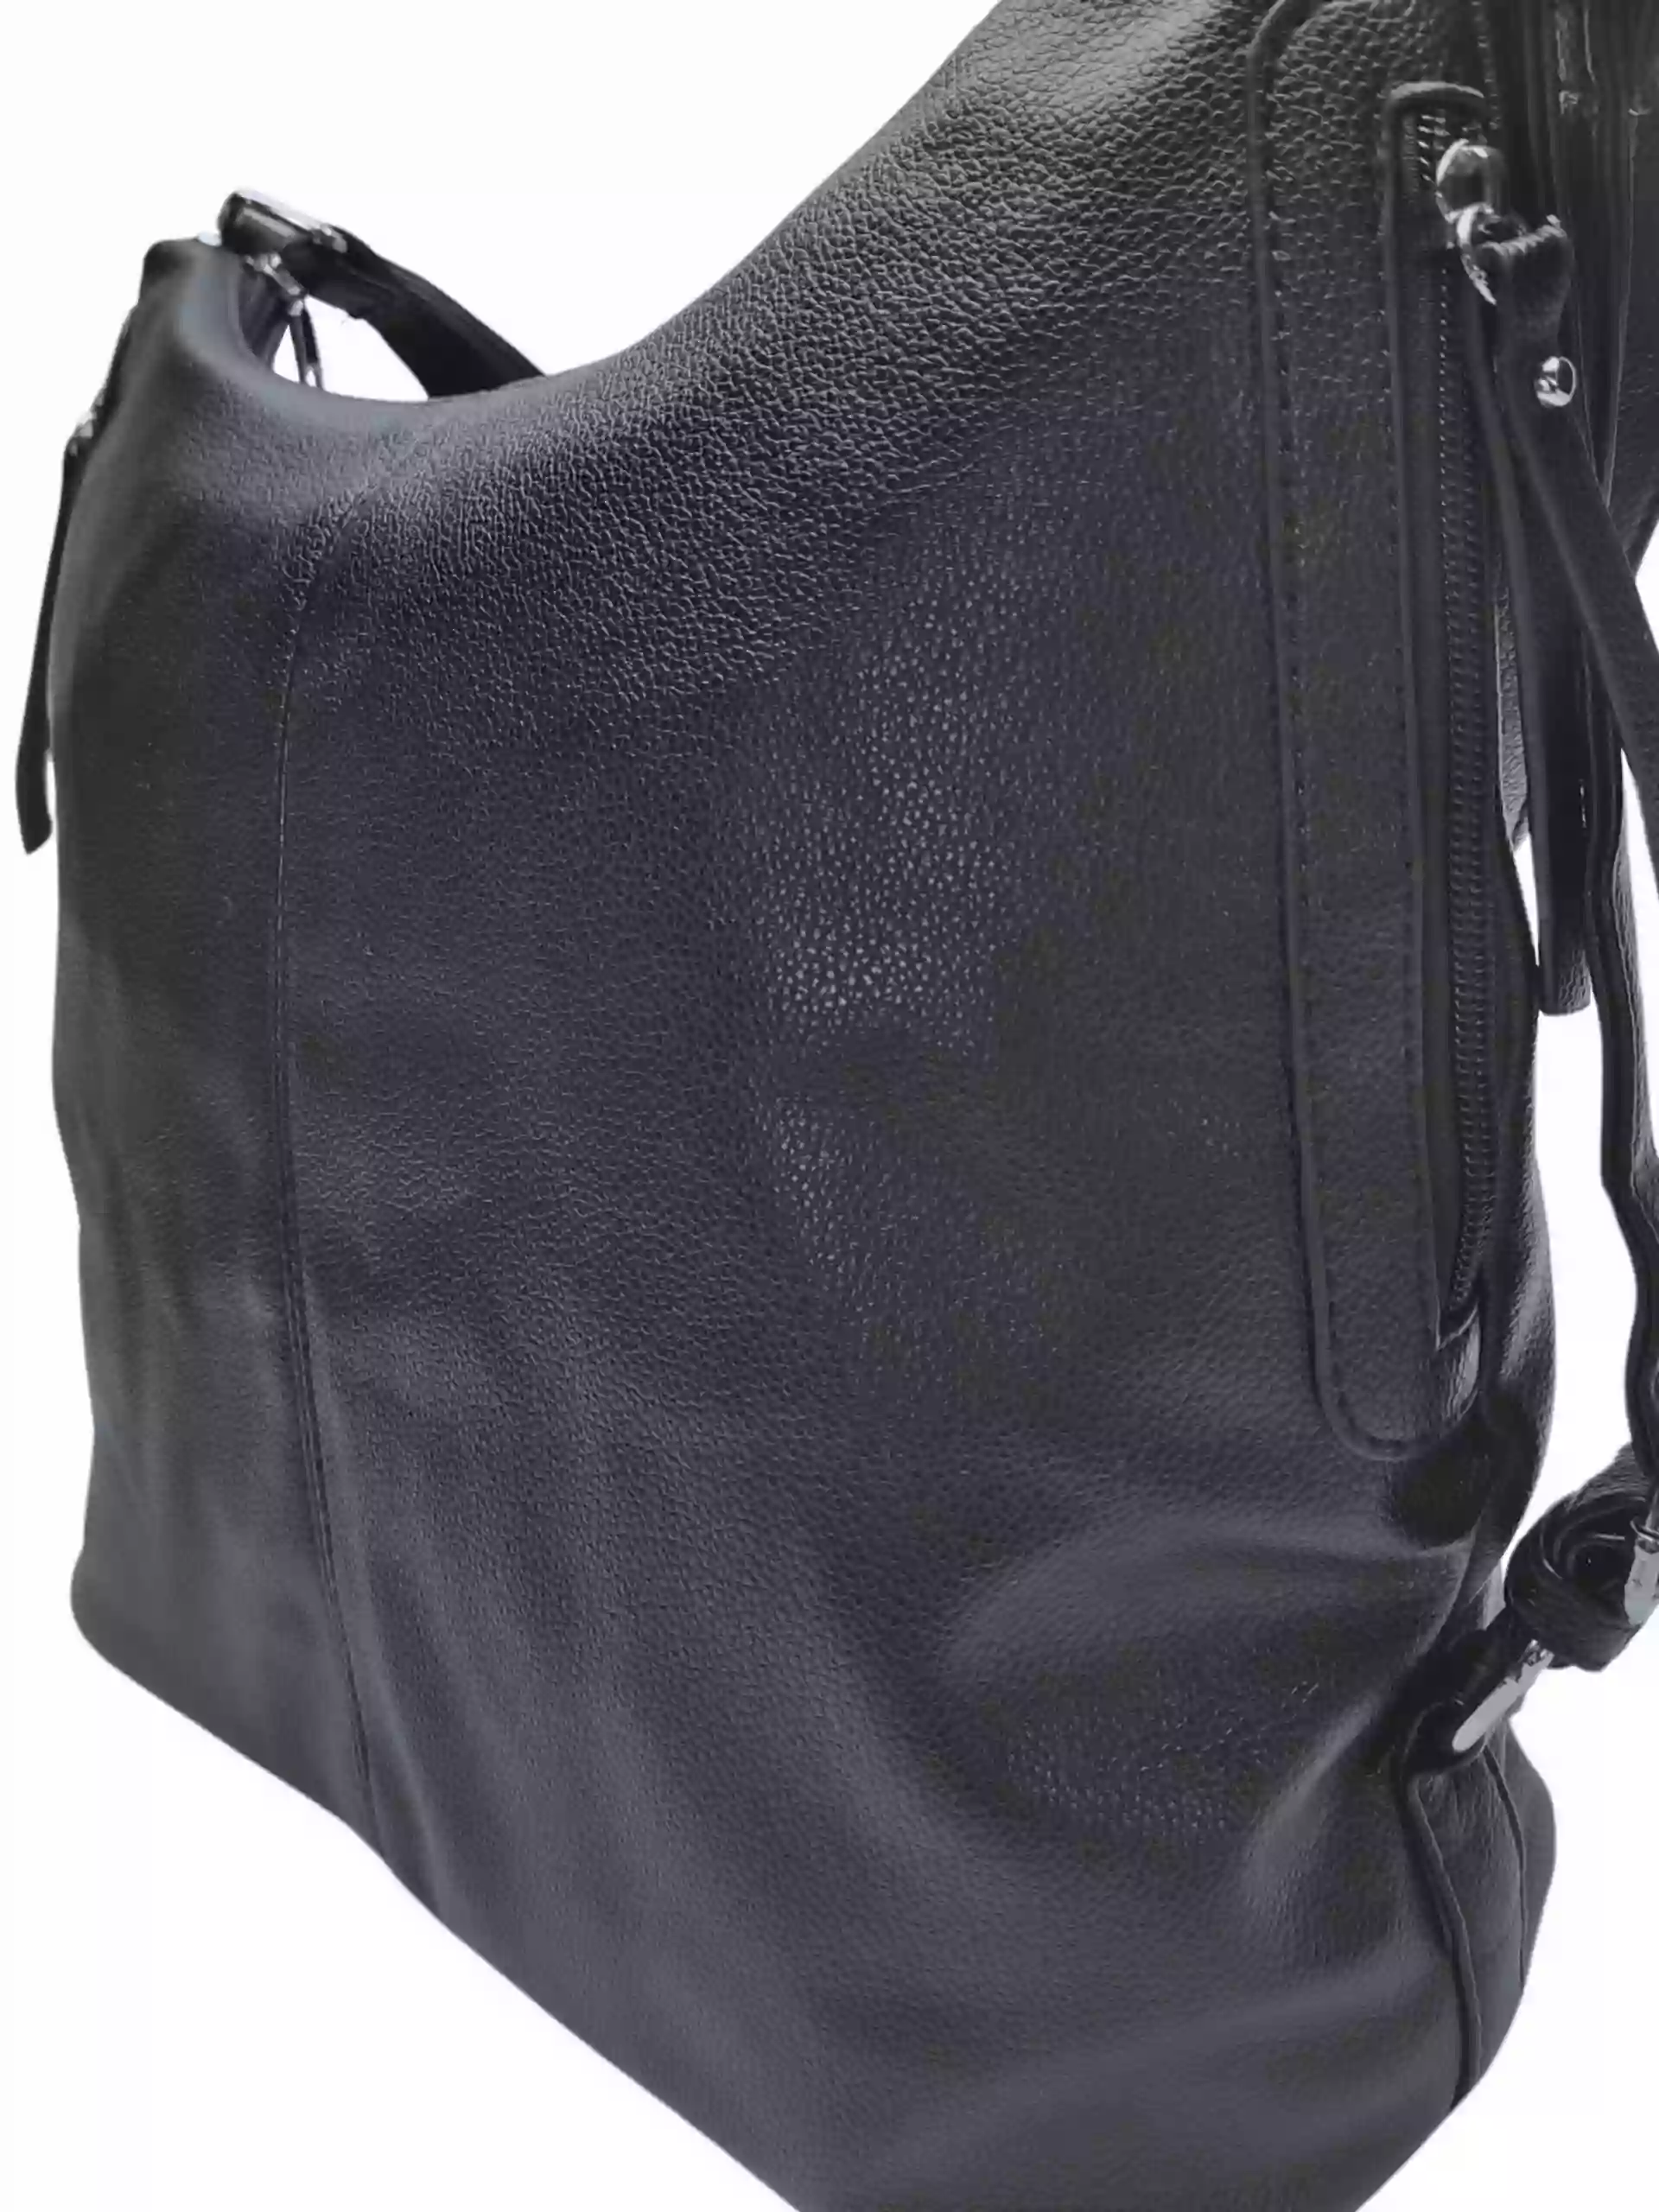 Velký černý kabelko-batoh s bočními kapsami, Tapple, 9314-3, detail kabelko-batohu